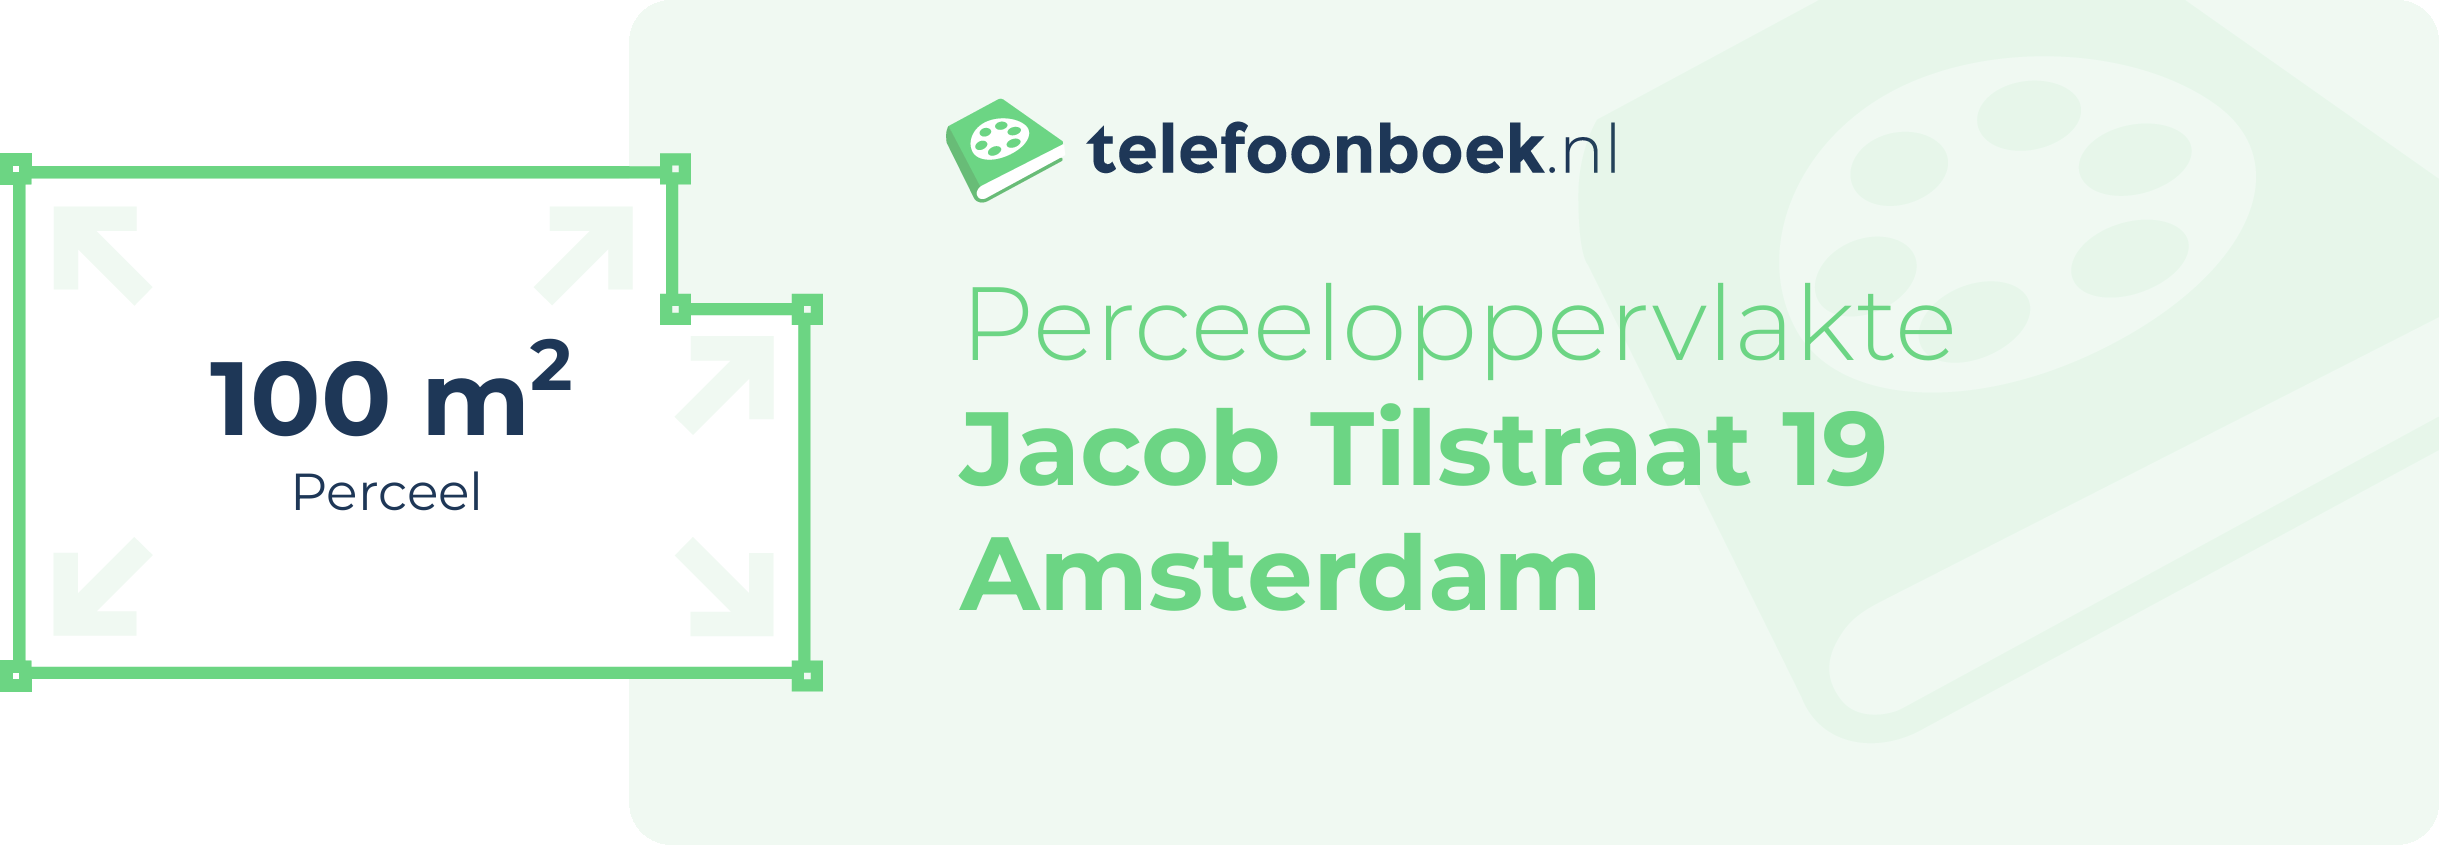 Perceeloppervlakte Jacob Tilstraat 19 Amsterdam